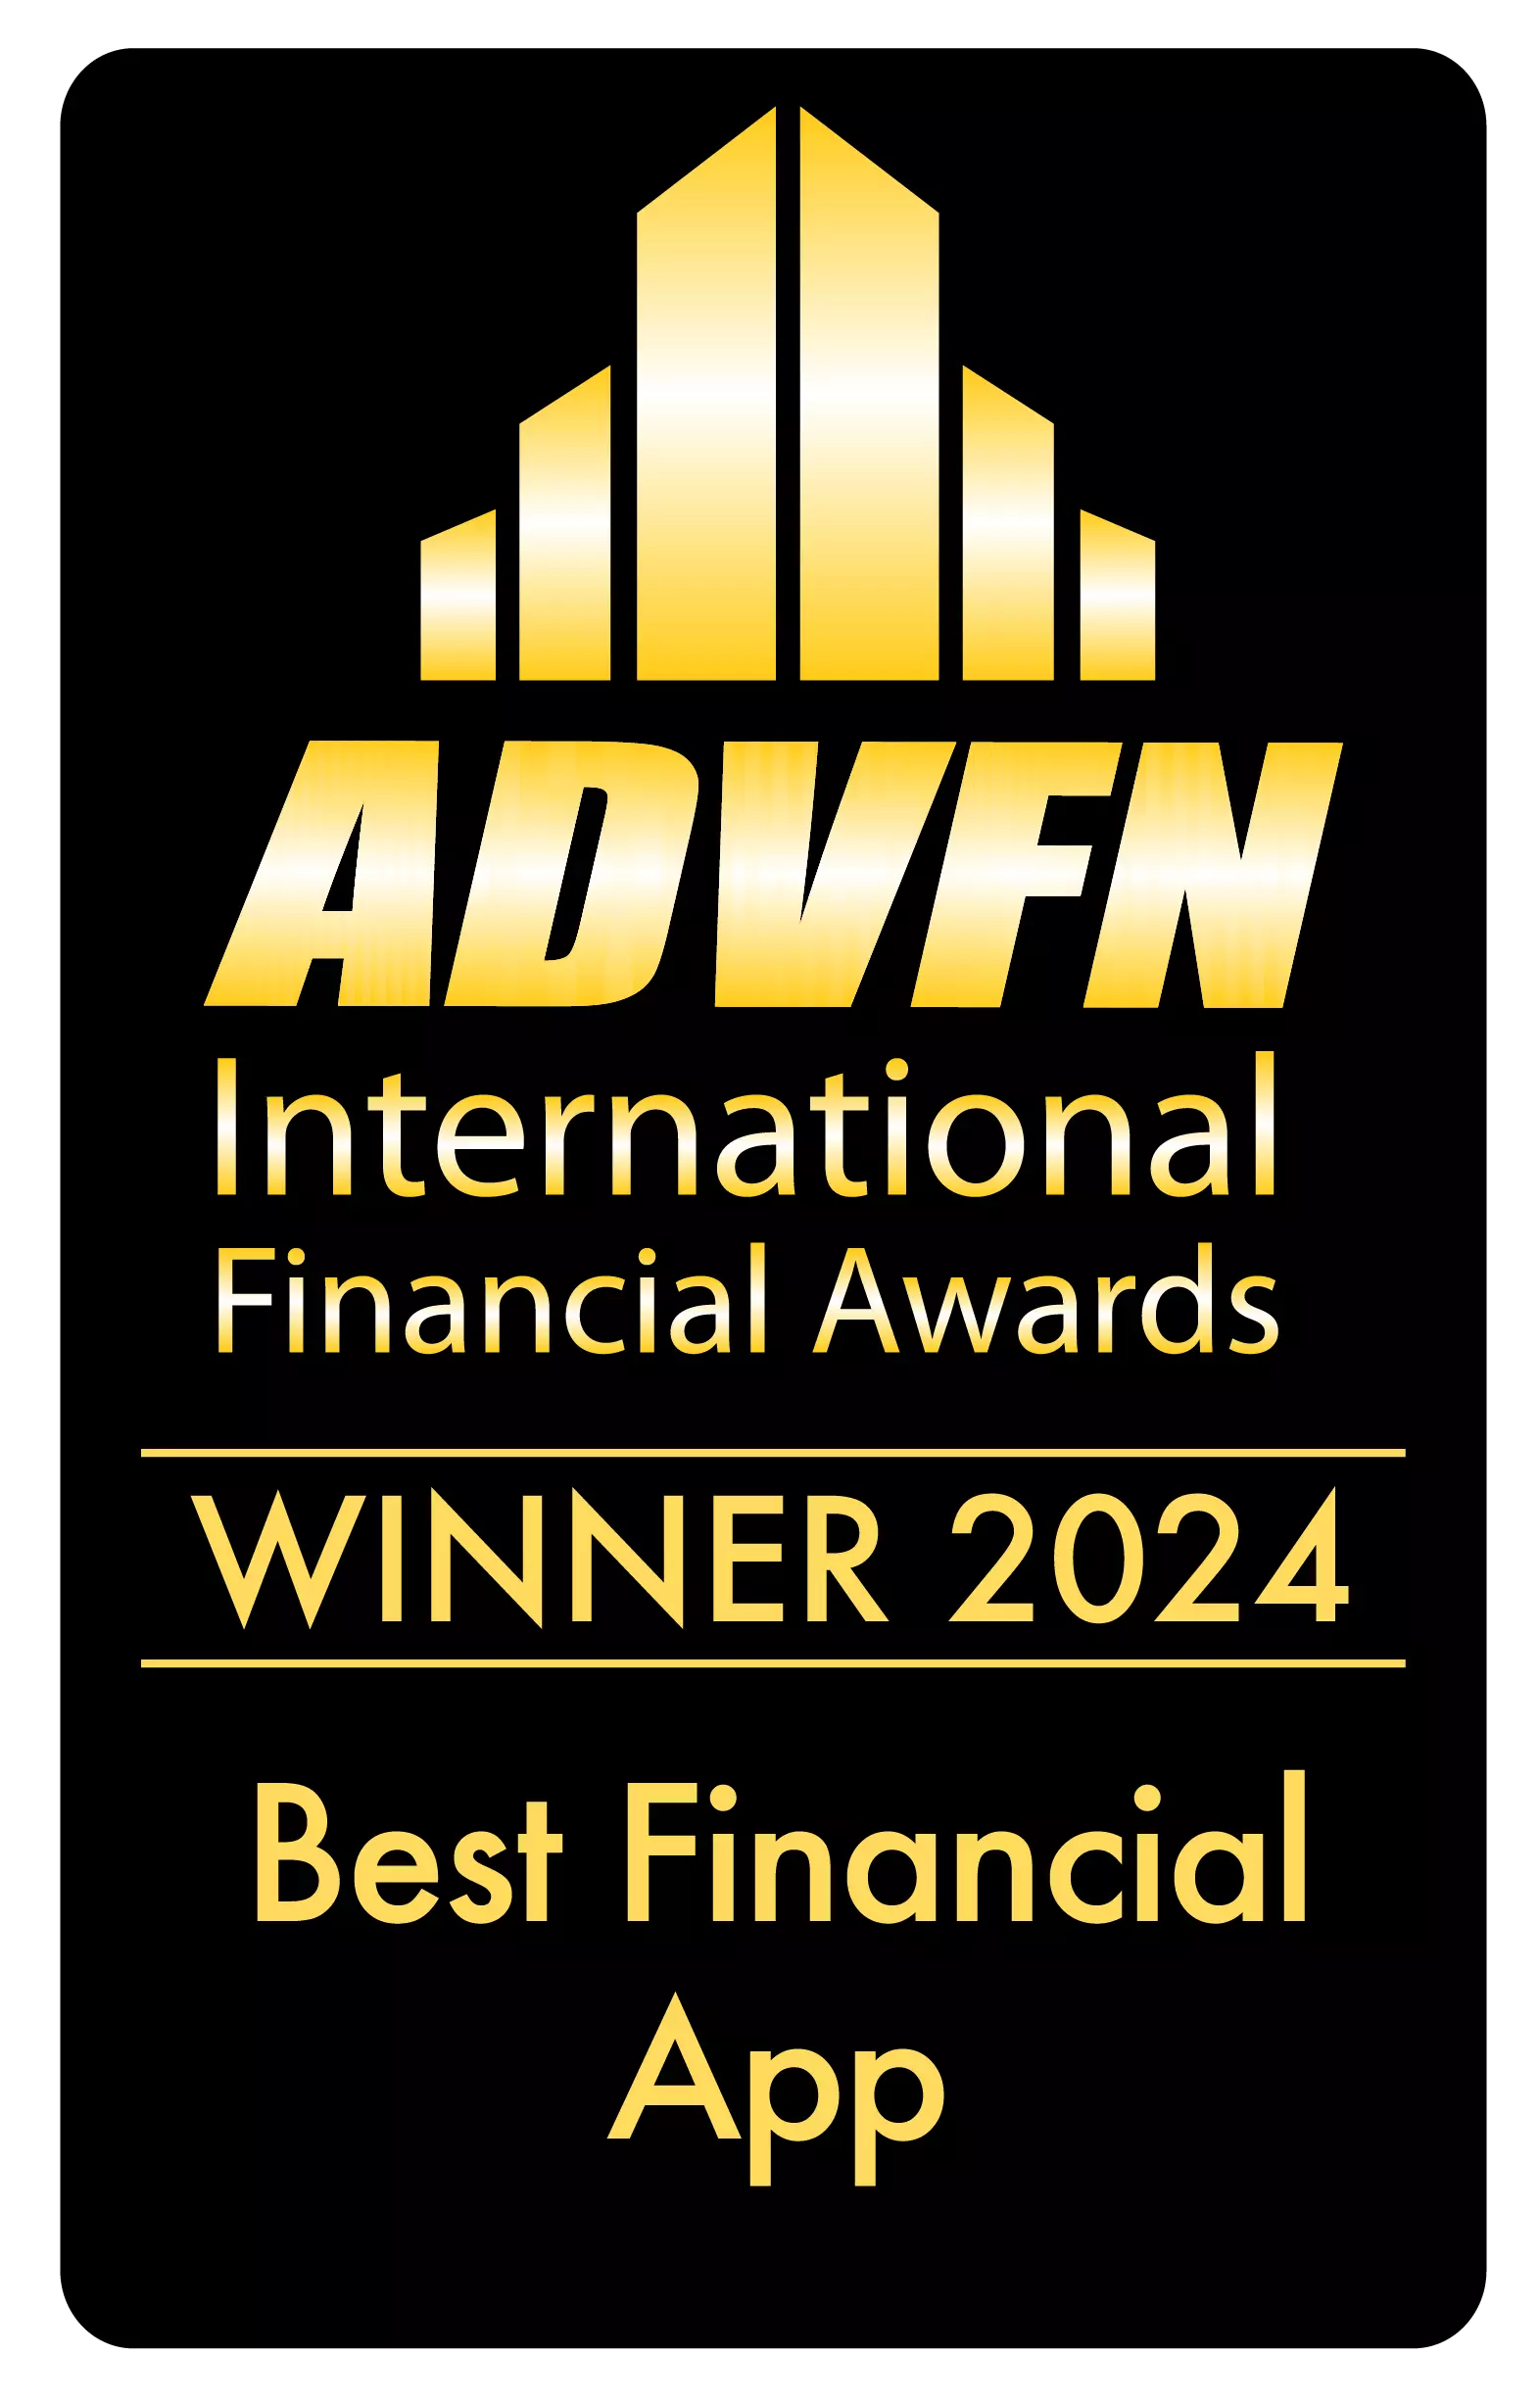 Best Finance App by ADVFN International Financial Awards